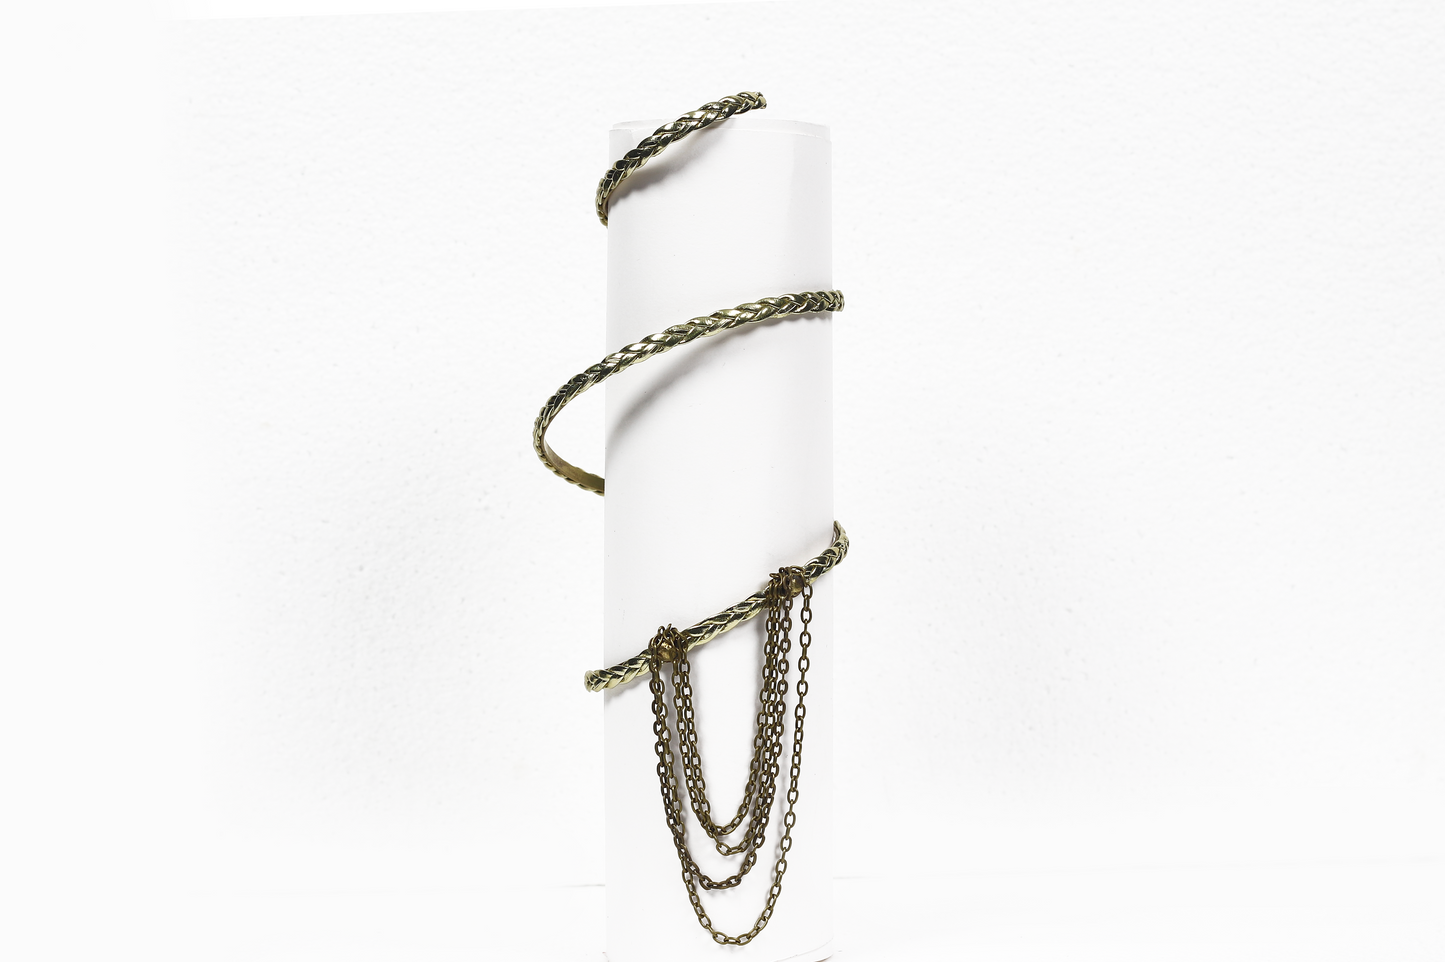 Citra Anklet / Arm Bracelet